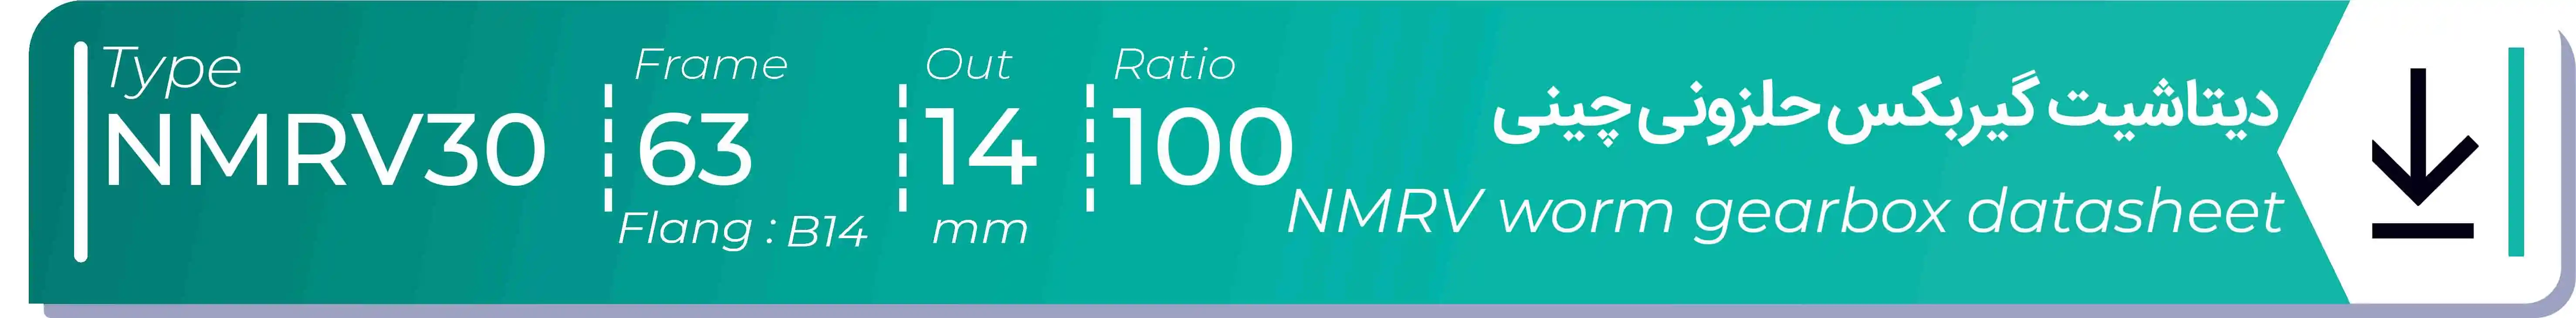  دیتاشیت و مشخصات فنی گیربکس حلزونی چینی   NMRV30  -  با خروجی 14- میلی متر و نسبت100